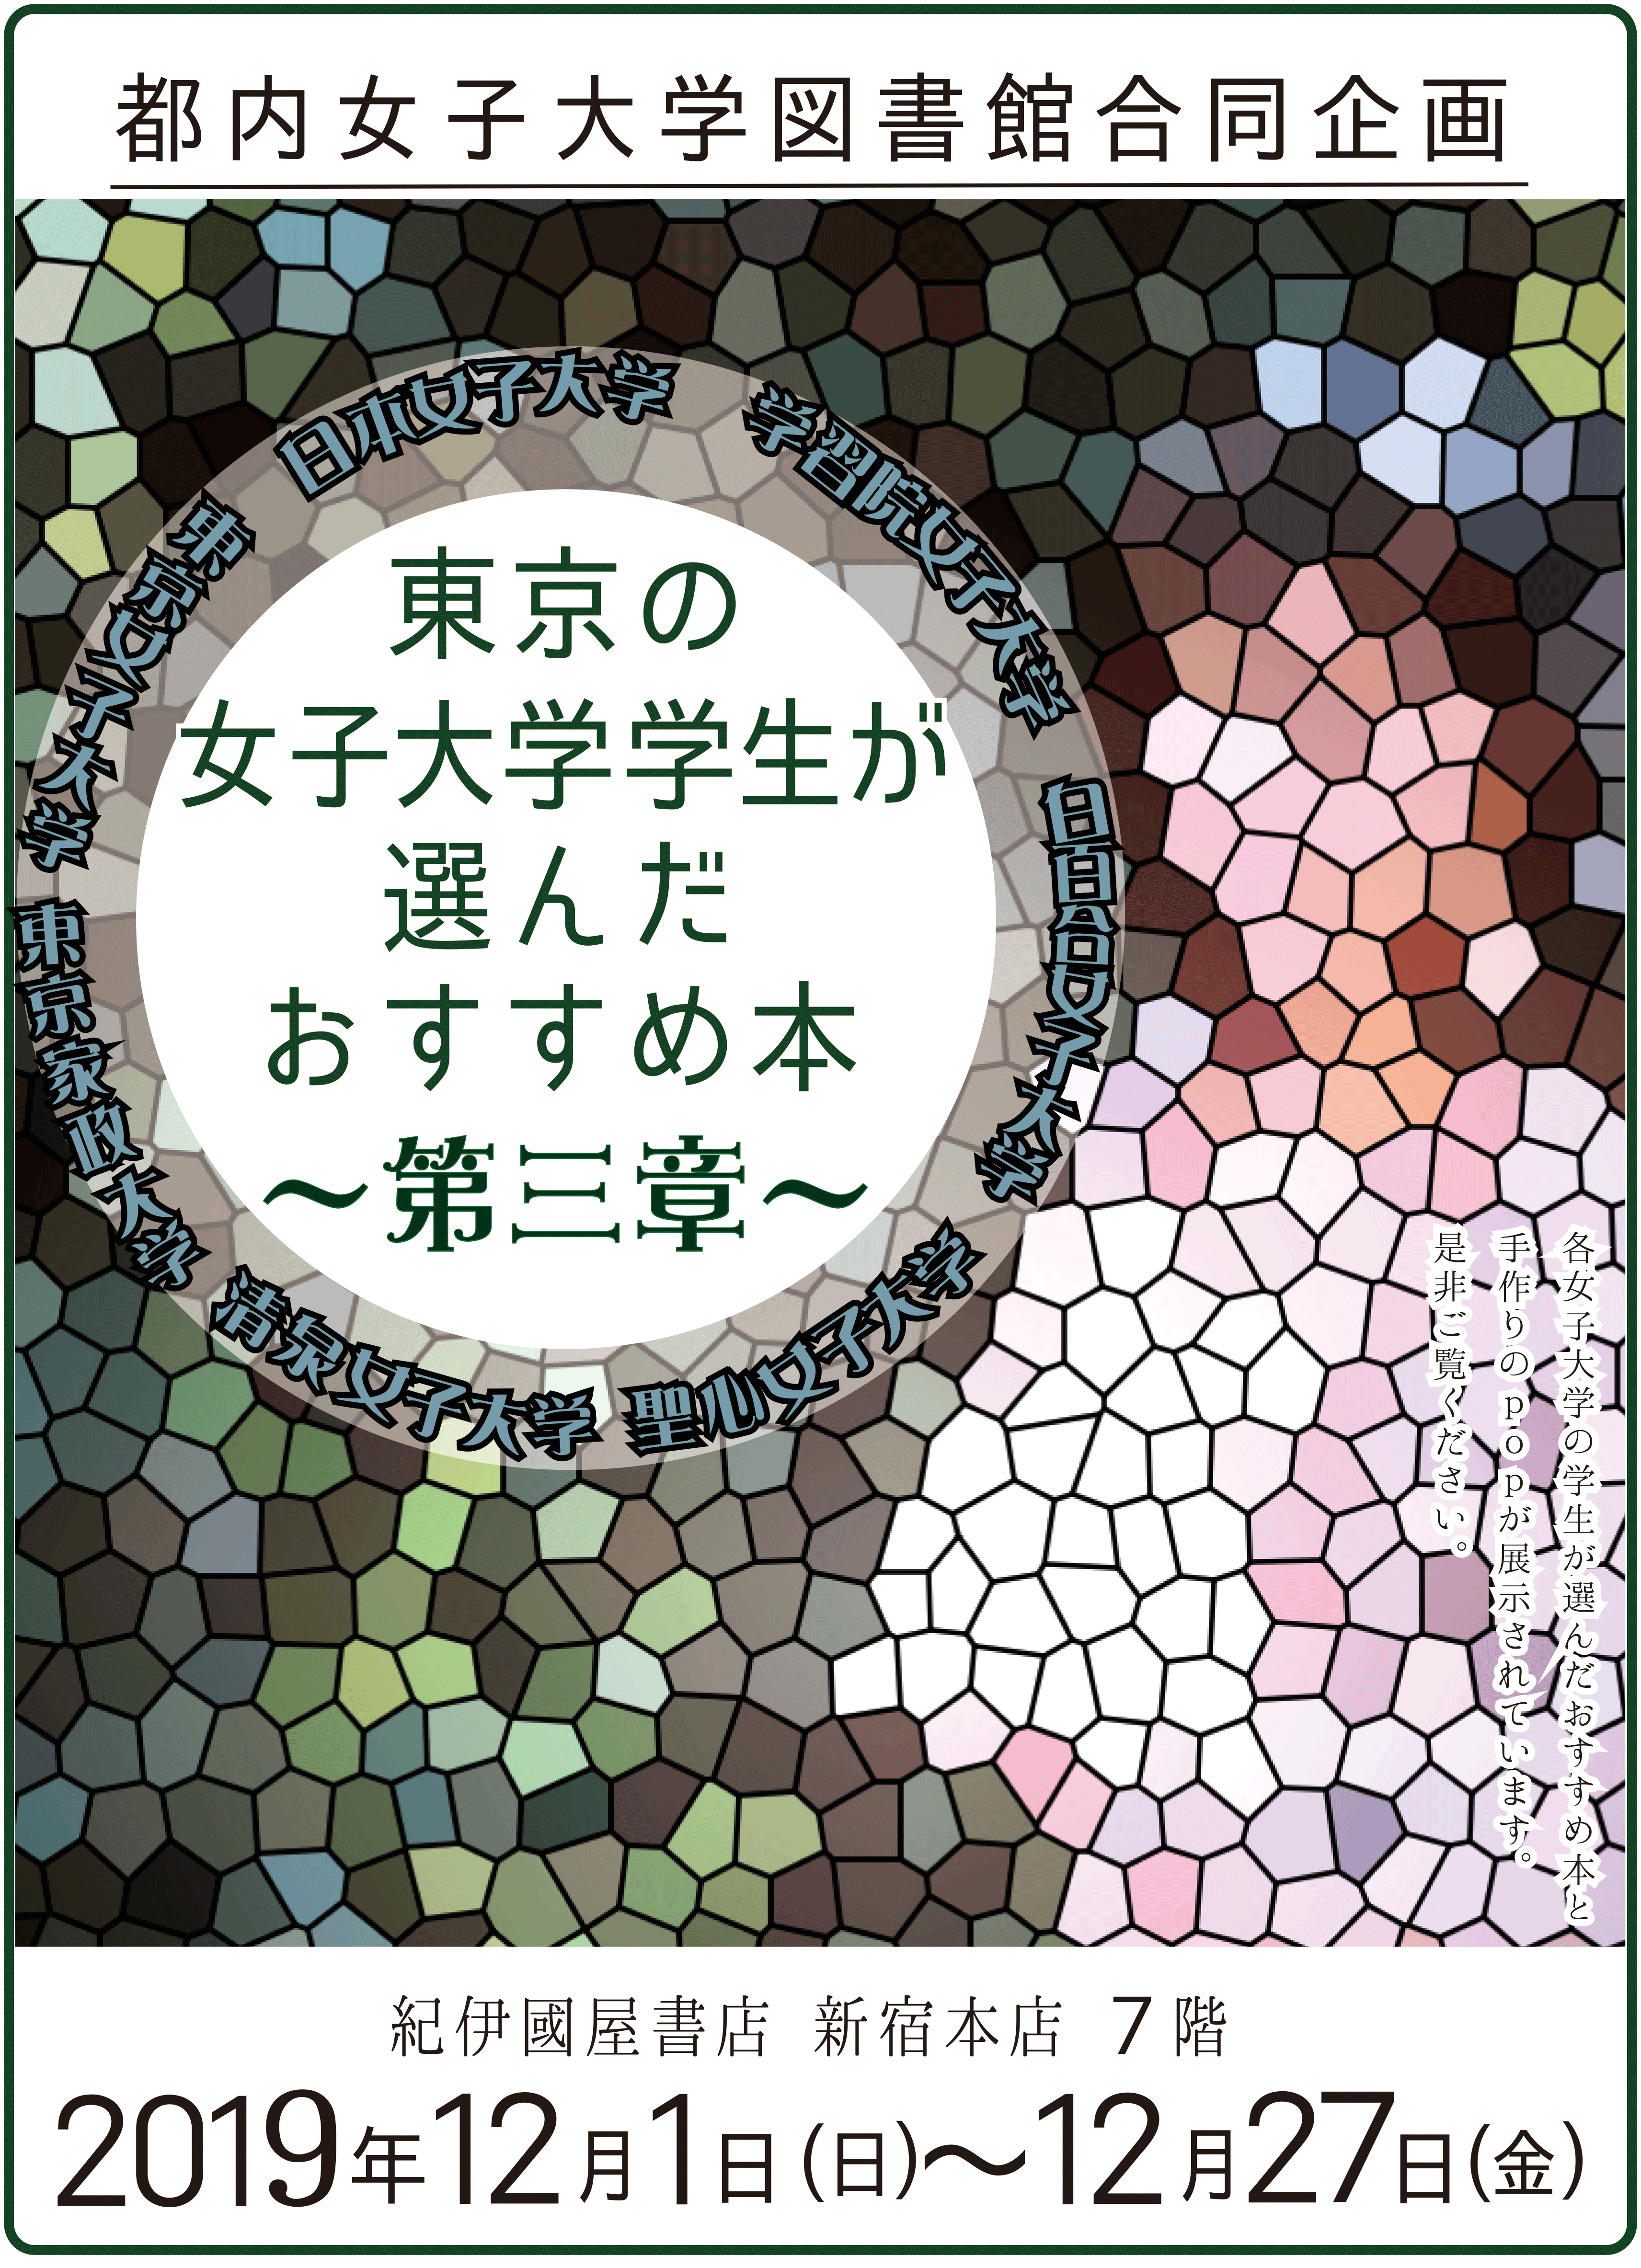 都内女子大学図書館合同企画 東京の女子大学学生が選んだおすすめ本 のお知らせ